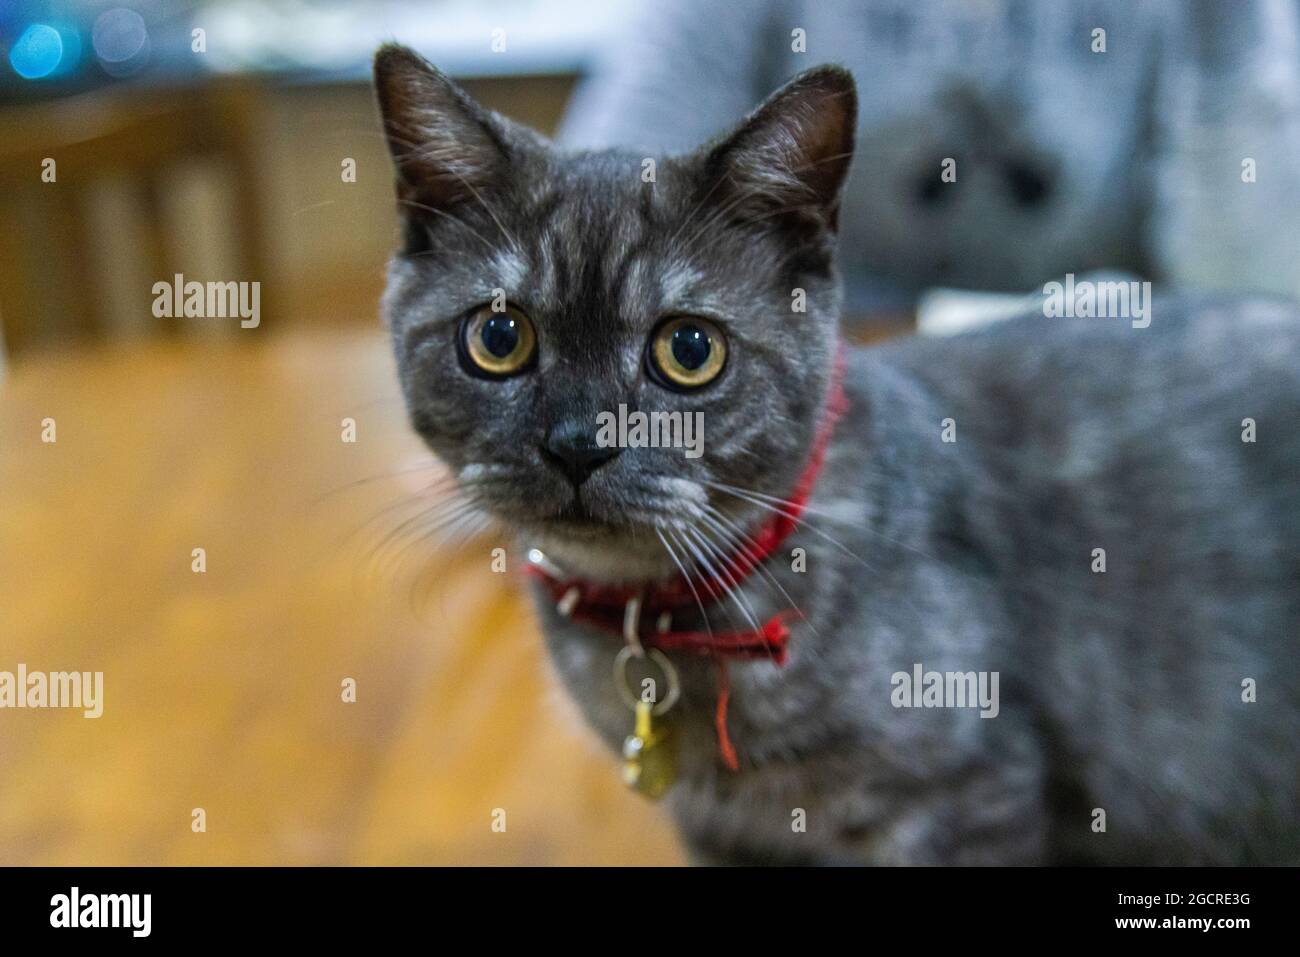 Le petit chaton noir regarde curieusement l'appareil photo. Chat à fourrure noire, gros yeux jaunes et collier rouge sur une table en bois. Arrière-plan flou Banque D'Images